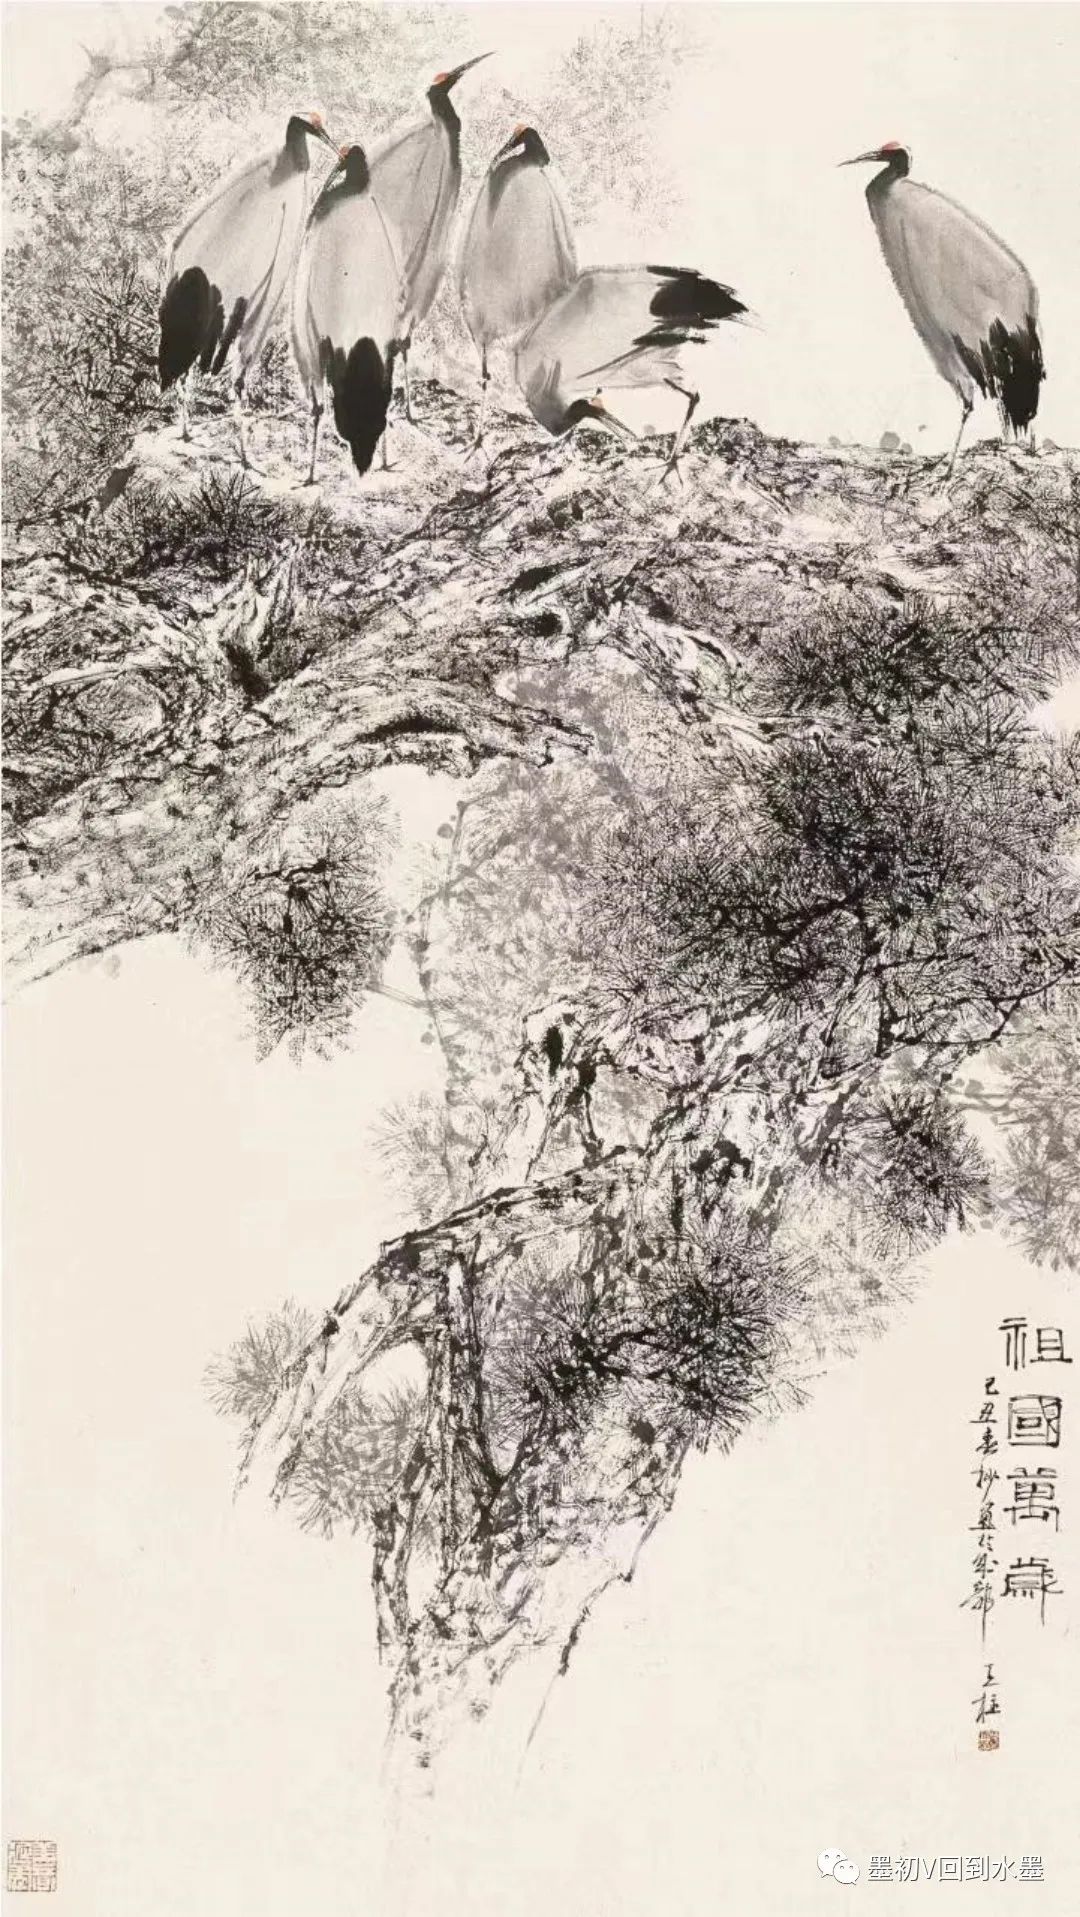 诗意的存在——秦天柱画中拟人的笔墨与图式